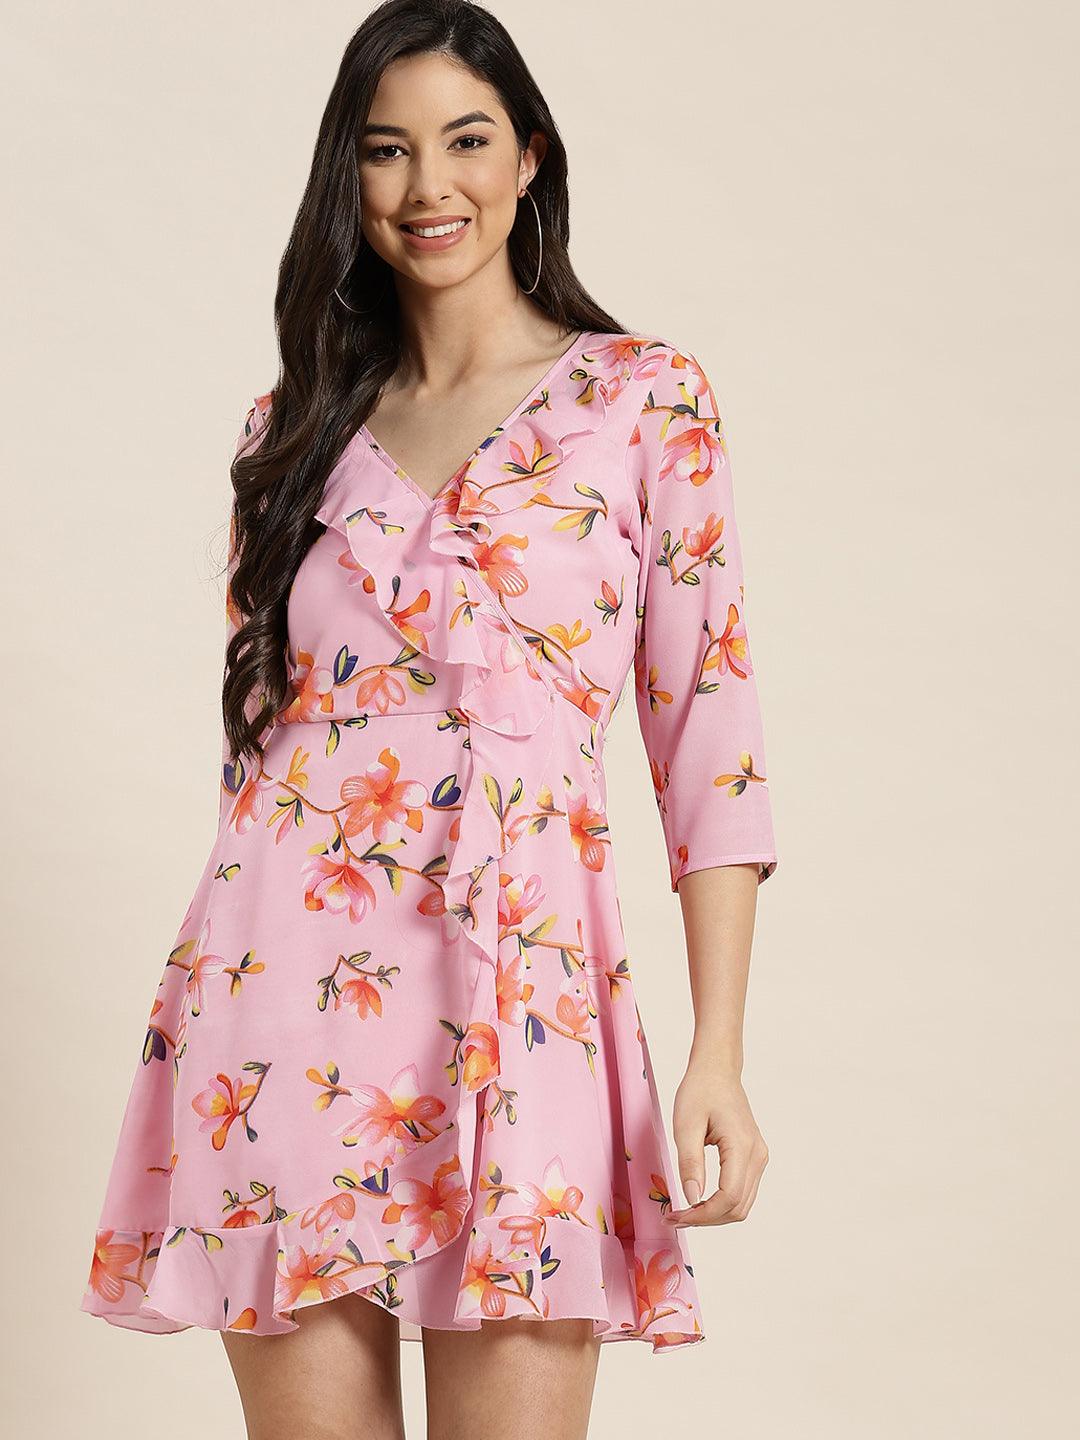 Qurvii Floral Pink Ruffle Dress - Qurvii India